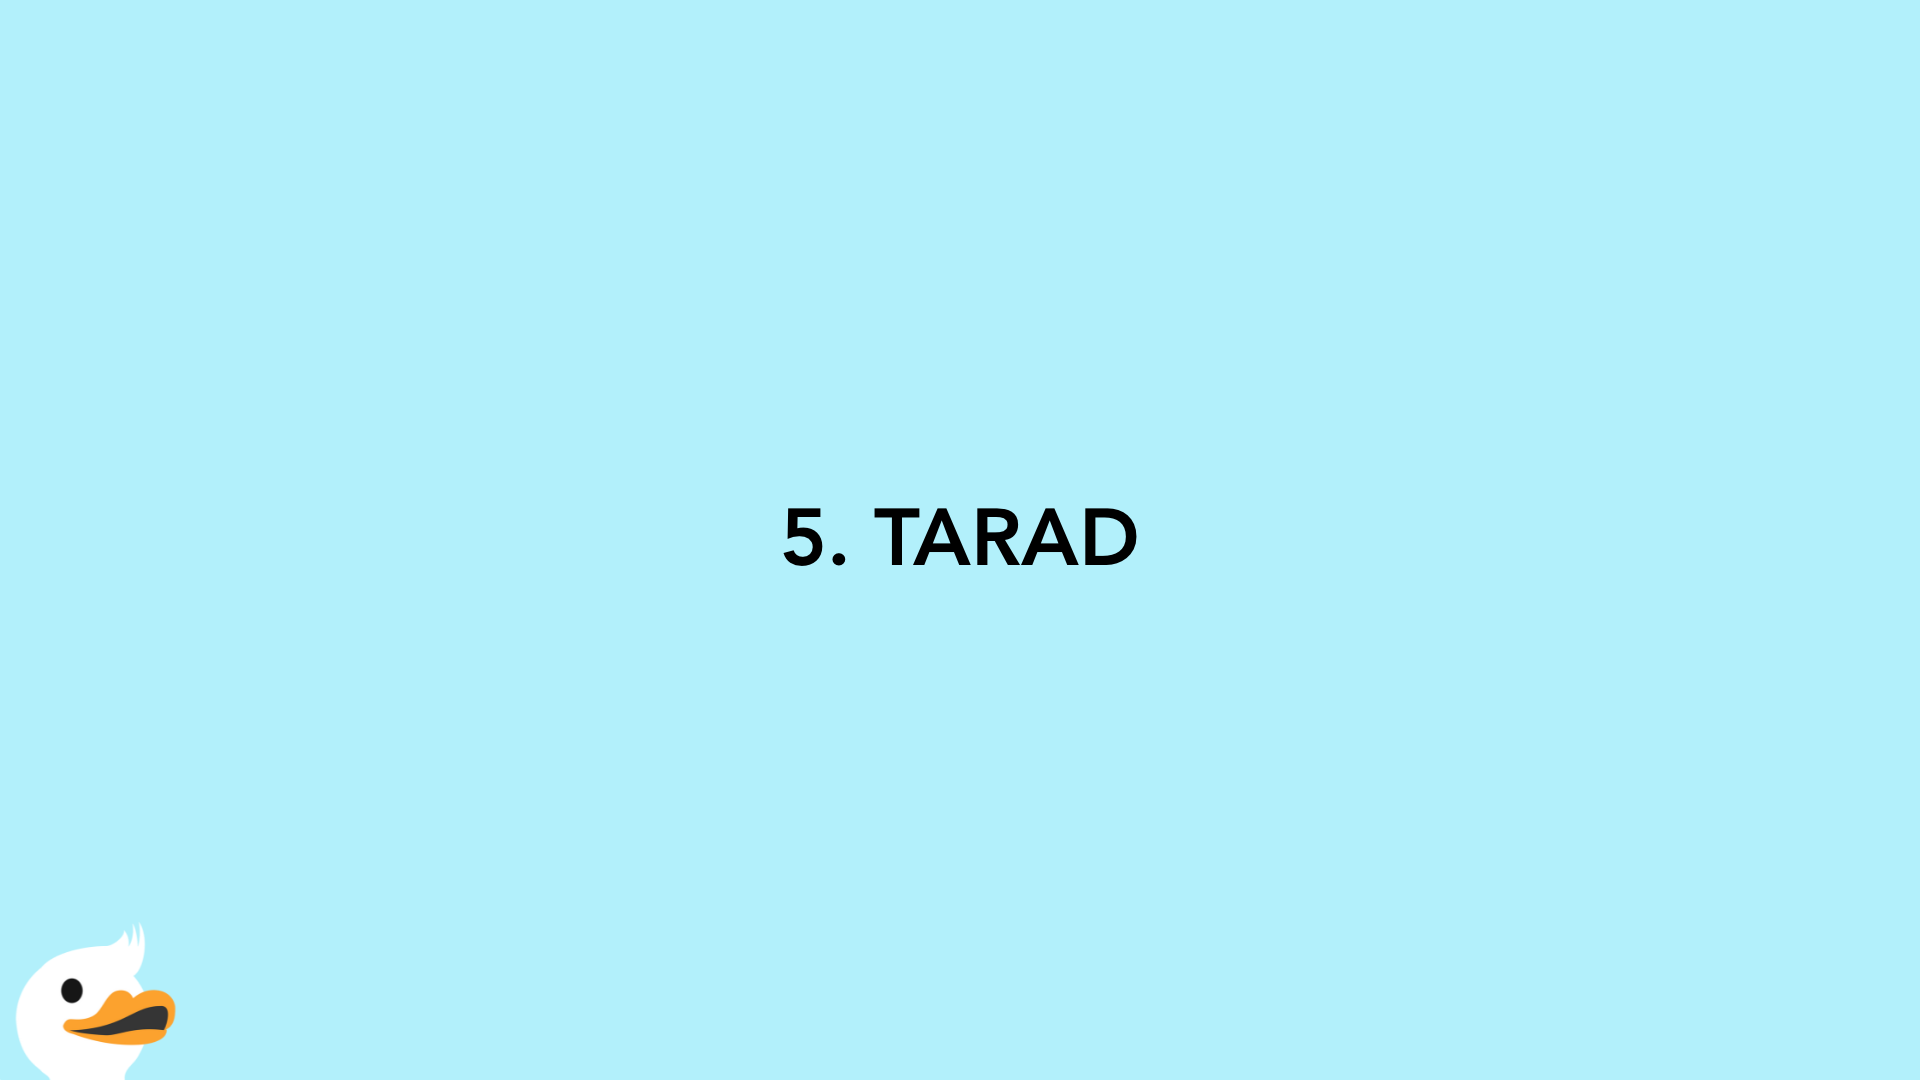 5. TARAD